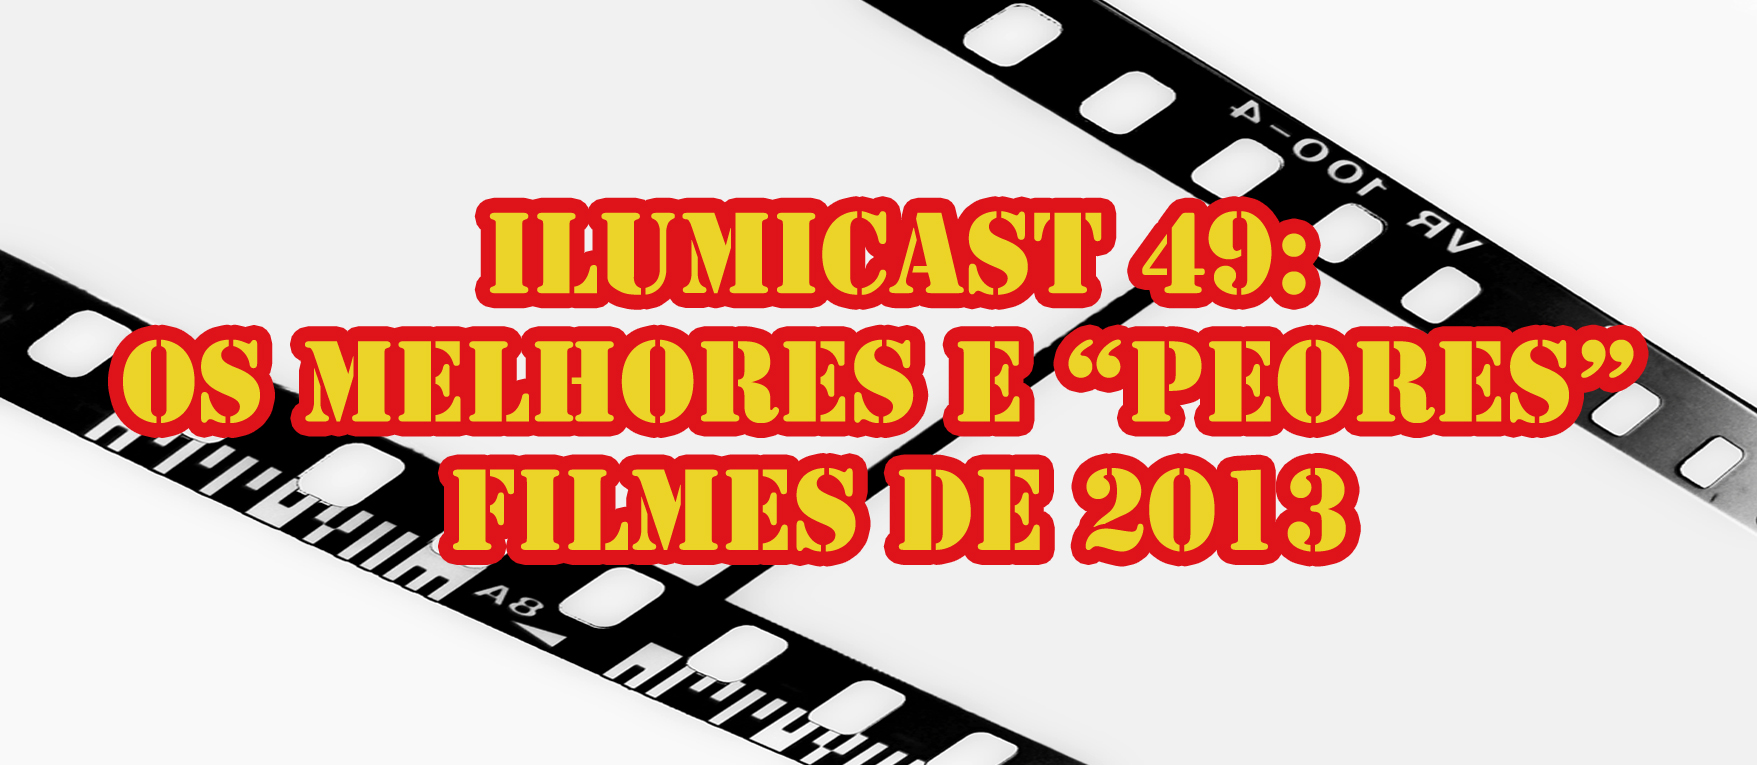 Você está visualizando atualmente Ilumicast 49 – Os melhores e “peores” filmes de 2013.